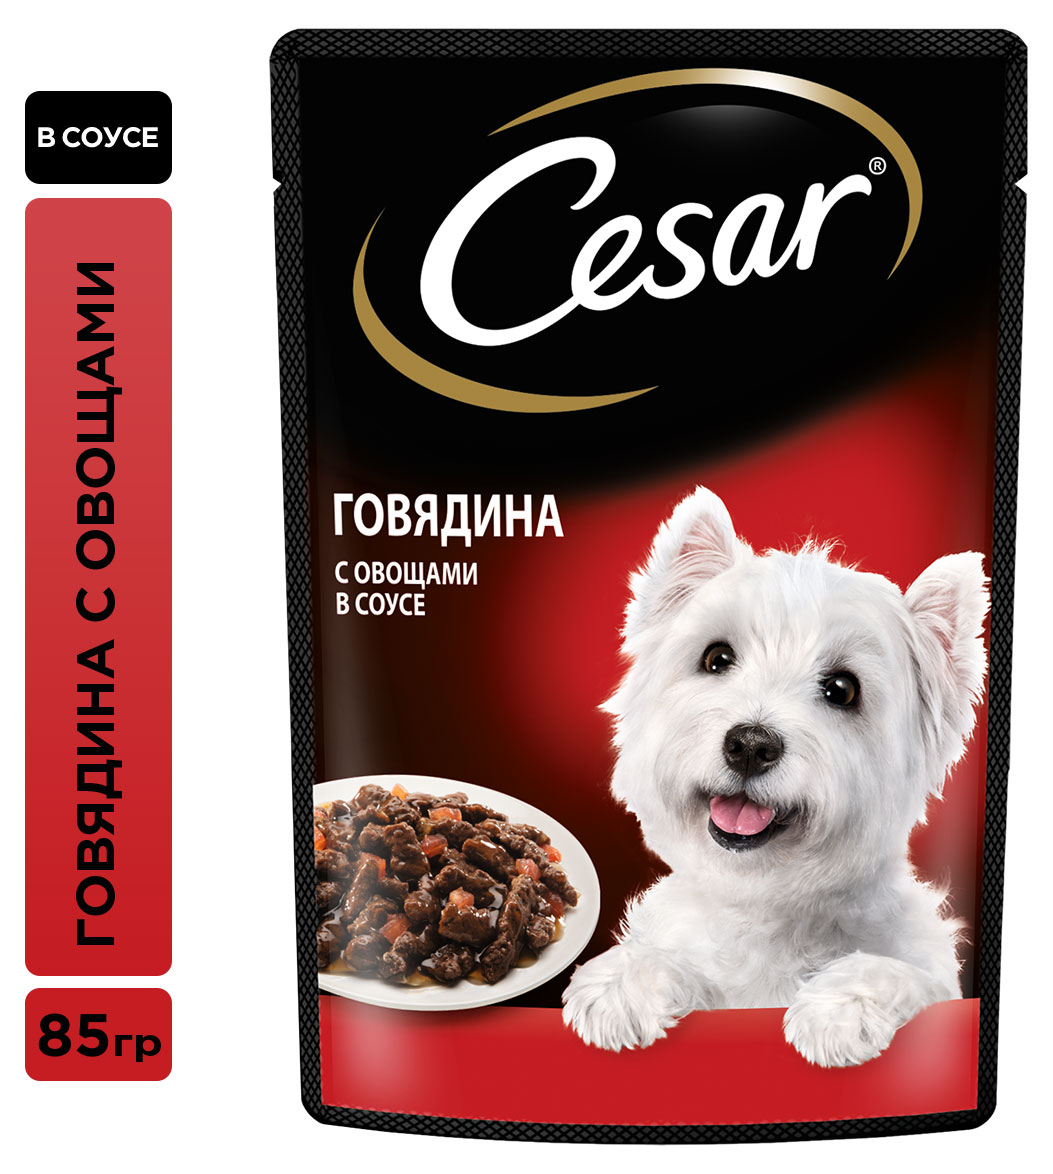 Cesar | Влажный корм для собак Cesar с говядиной и овощами в соусе, 85 г